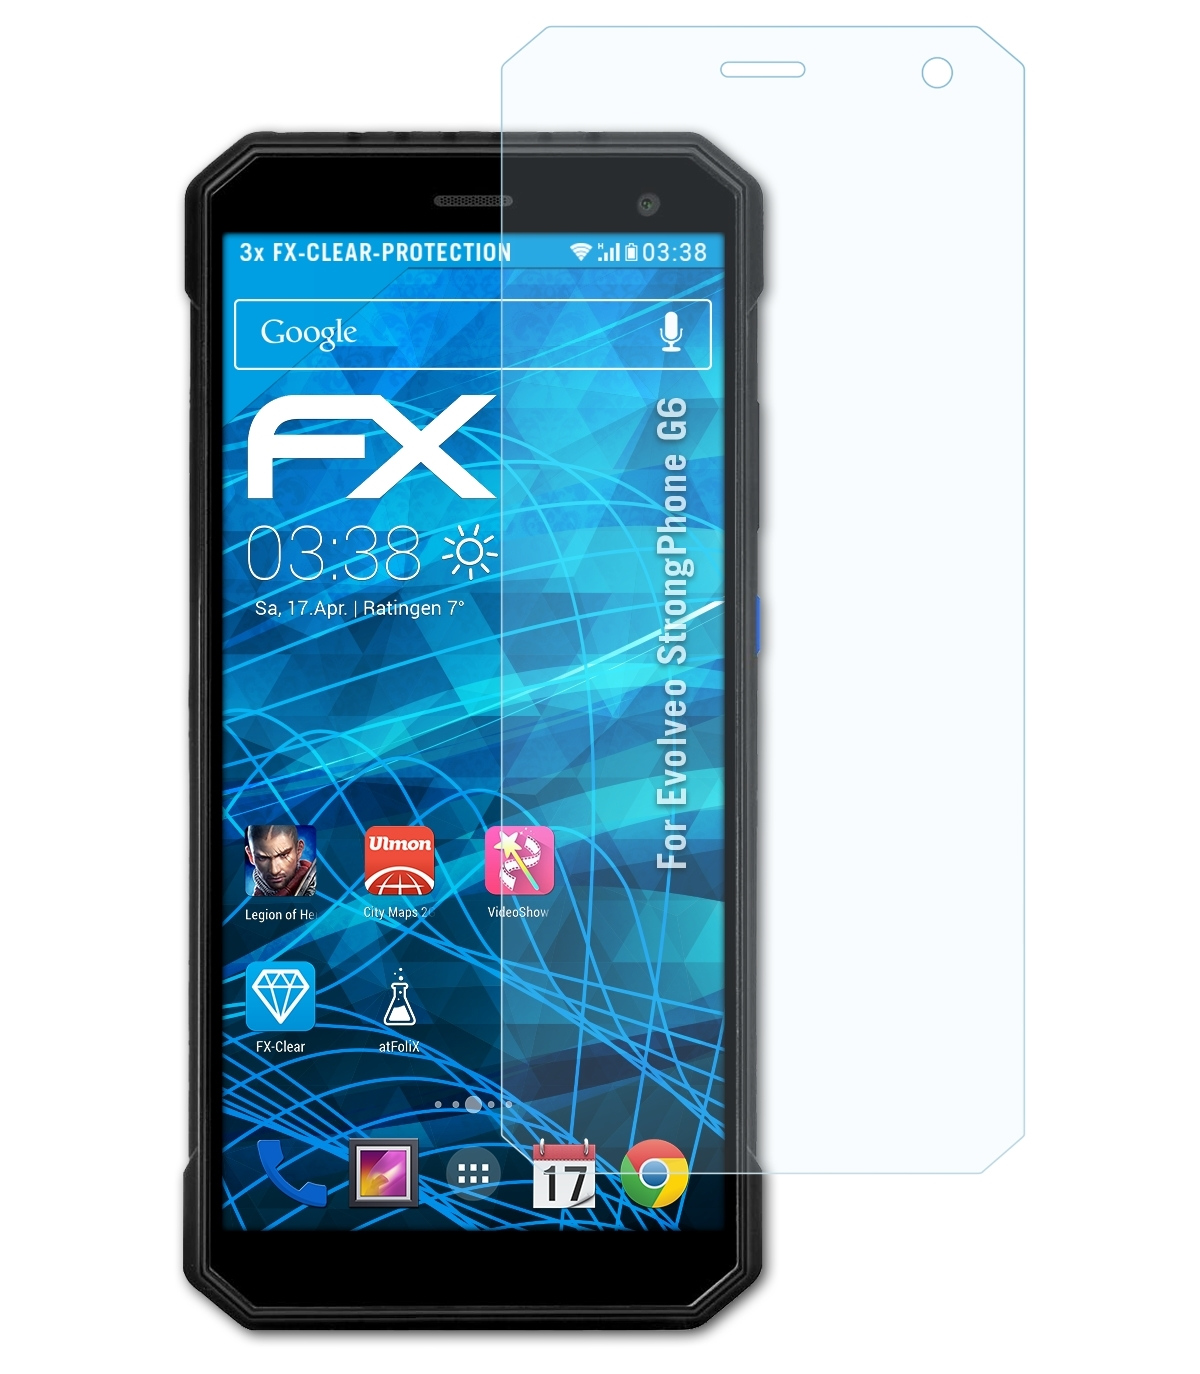 ATFOLIX 3x FX-Clear Displayschutz(für G6) StrongPhone Evolveo